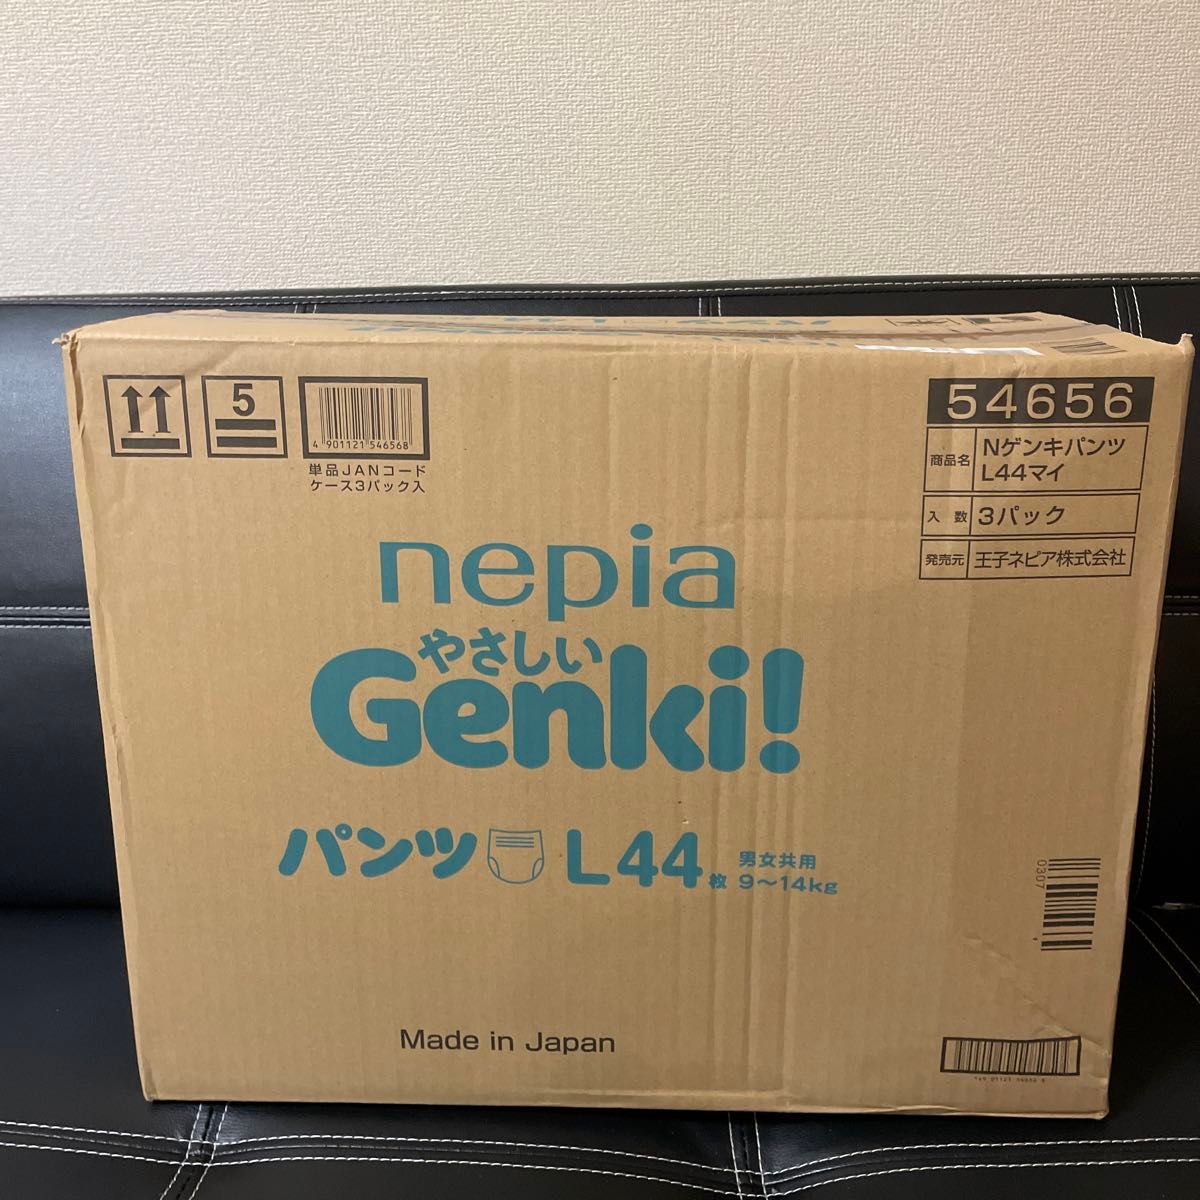 ネピア やさしい Genki！ゲンキ パンツ Lサイズ (9～14kg) 44枚×3パック (132枚)  オムツ